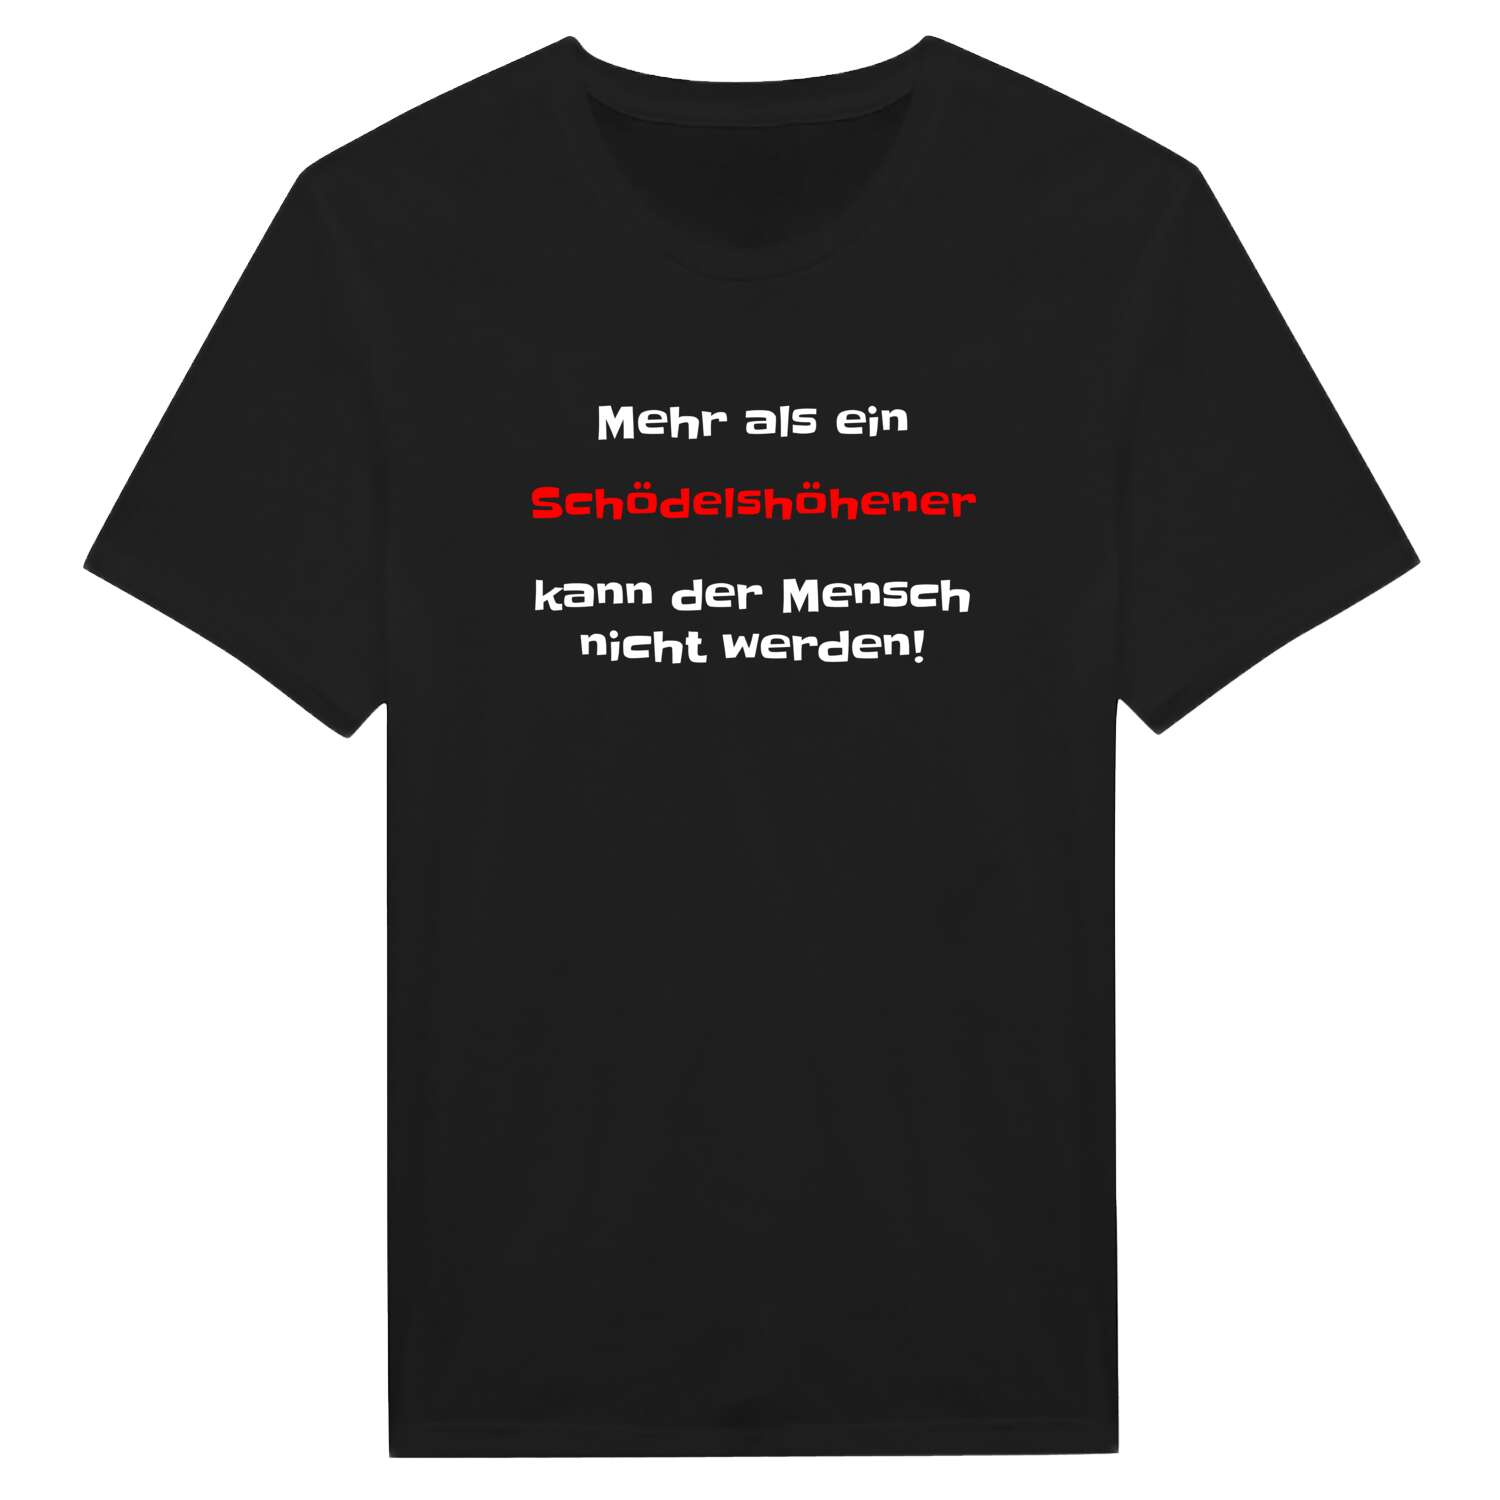 Schödelshöhe T-Shirt »Mehr als ein«